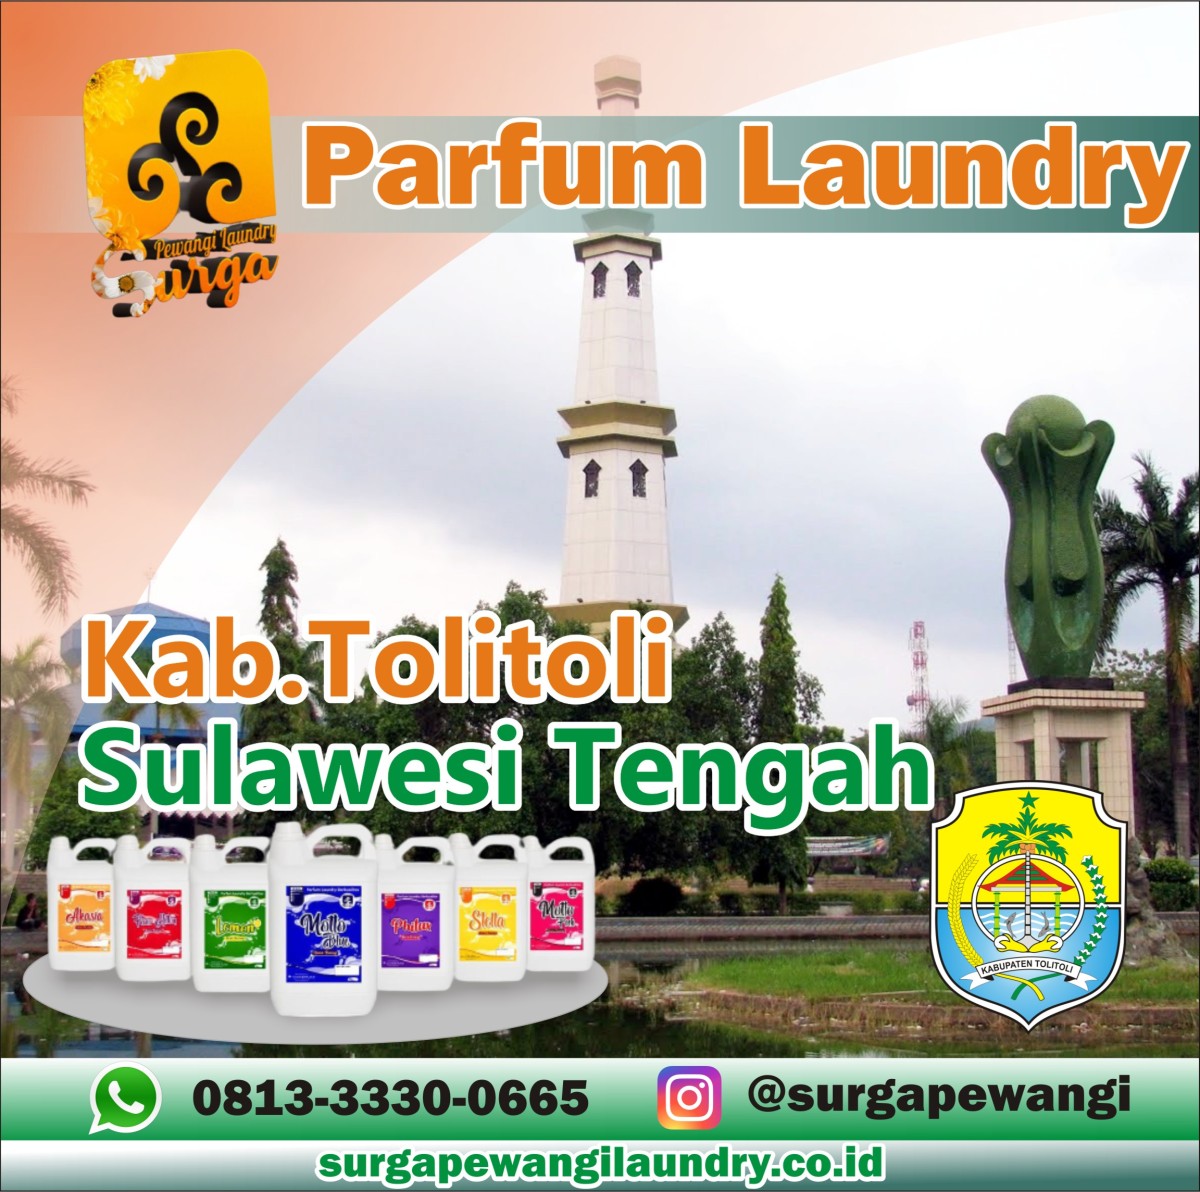 Parfum Laundry Kabupaten Tolitoli, Sulawesi Tengah